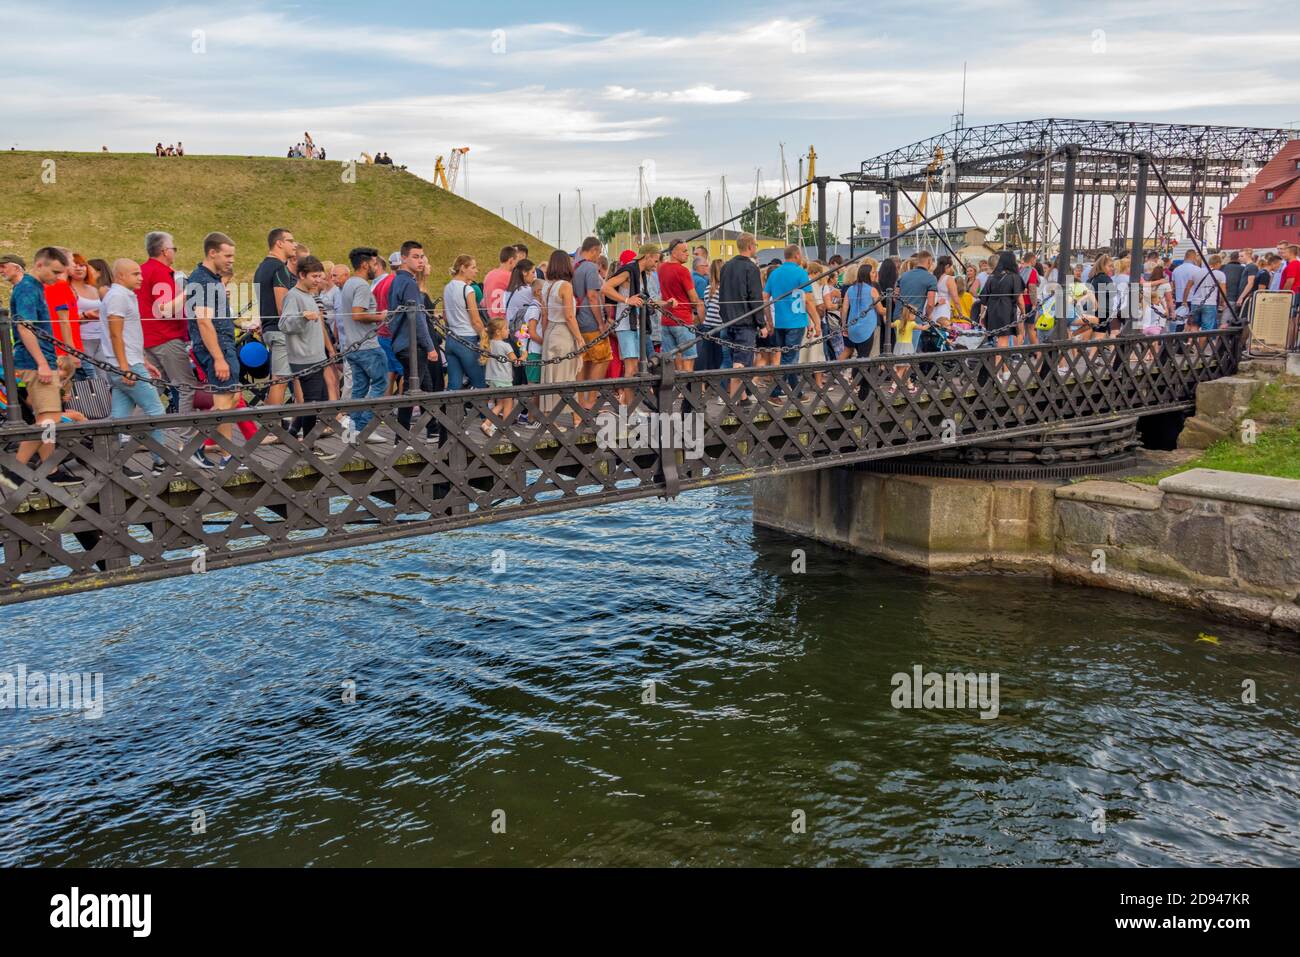 Personnes traversant le pont de la chaîne (le seul pont tournant de Lituanie tourné par deux personnes) pendant le Festival de la mer de Klaipeda, Klaipeda, Lituanie Banque D'Images